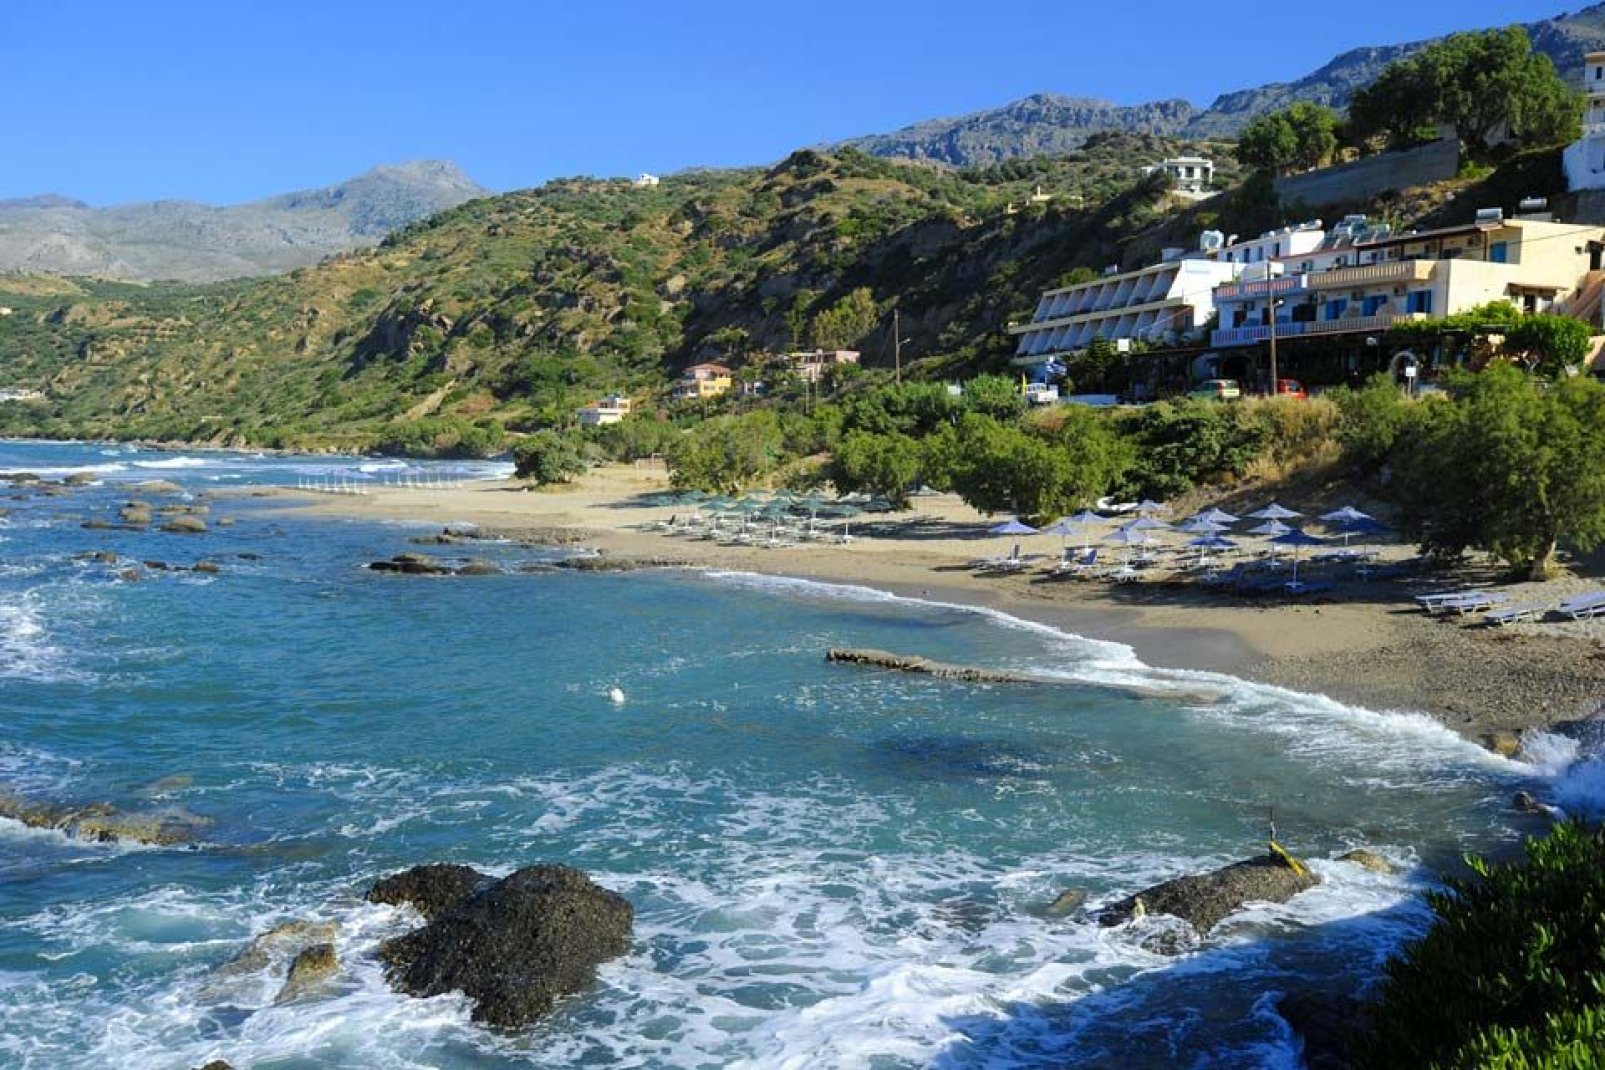 La localidad es un destino de fin de semana para los habitantes de la ciudad de Rethymnon, situada a unos 20 km.